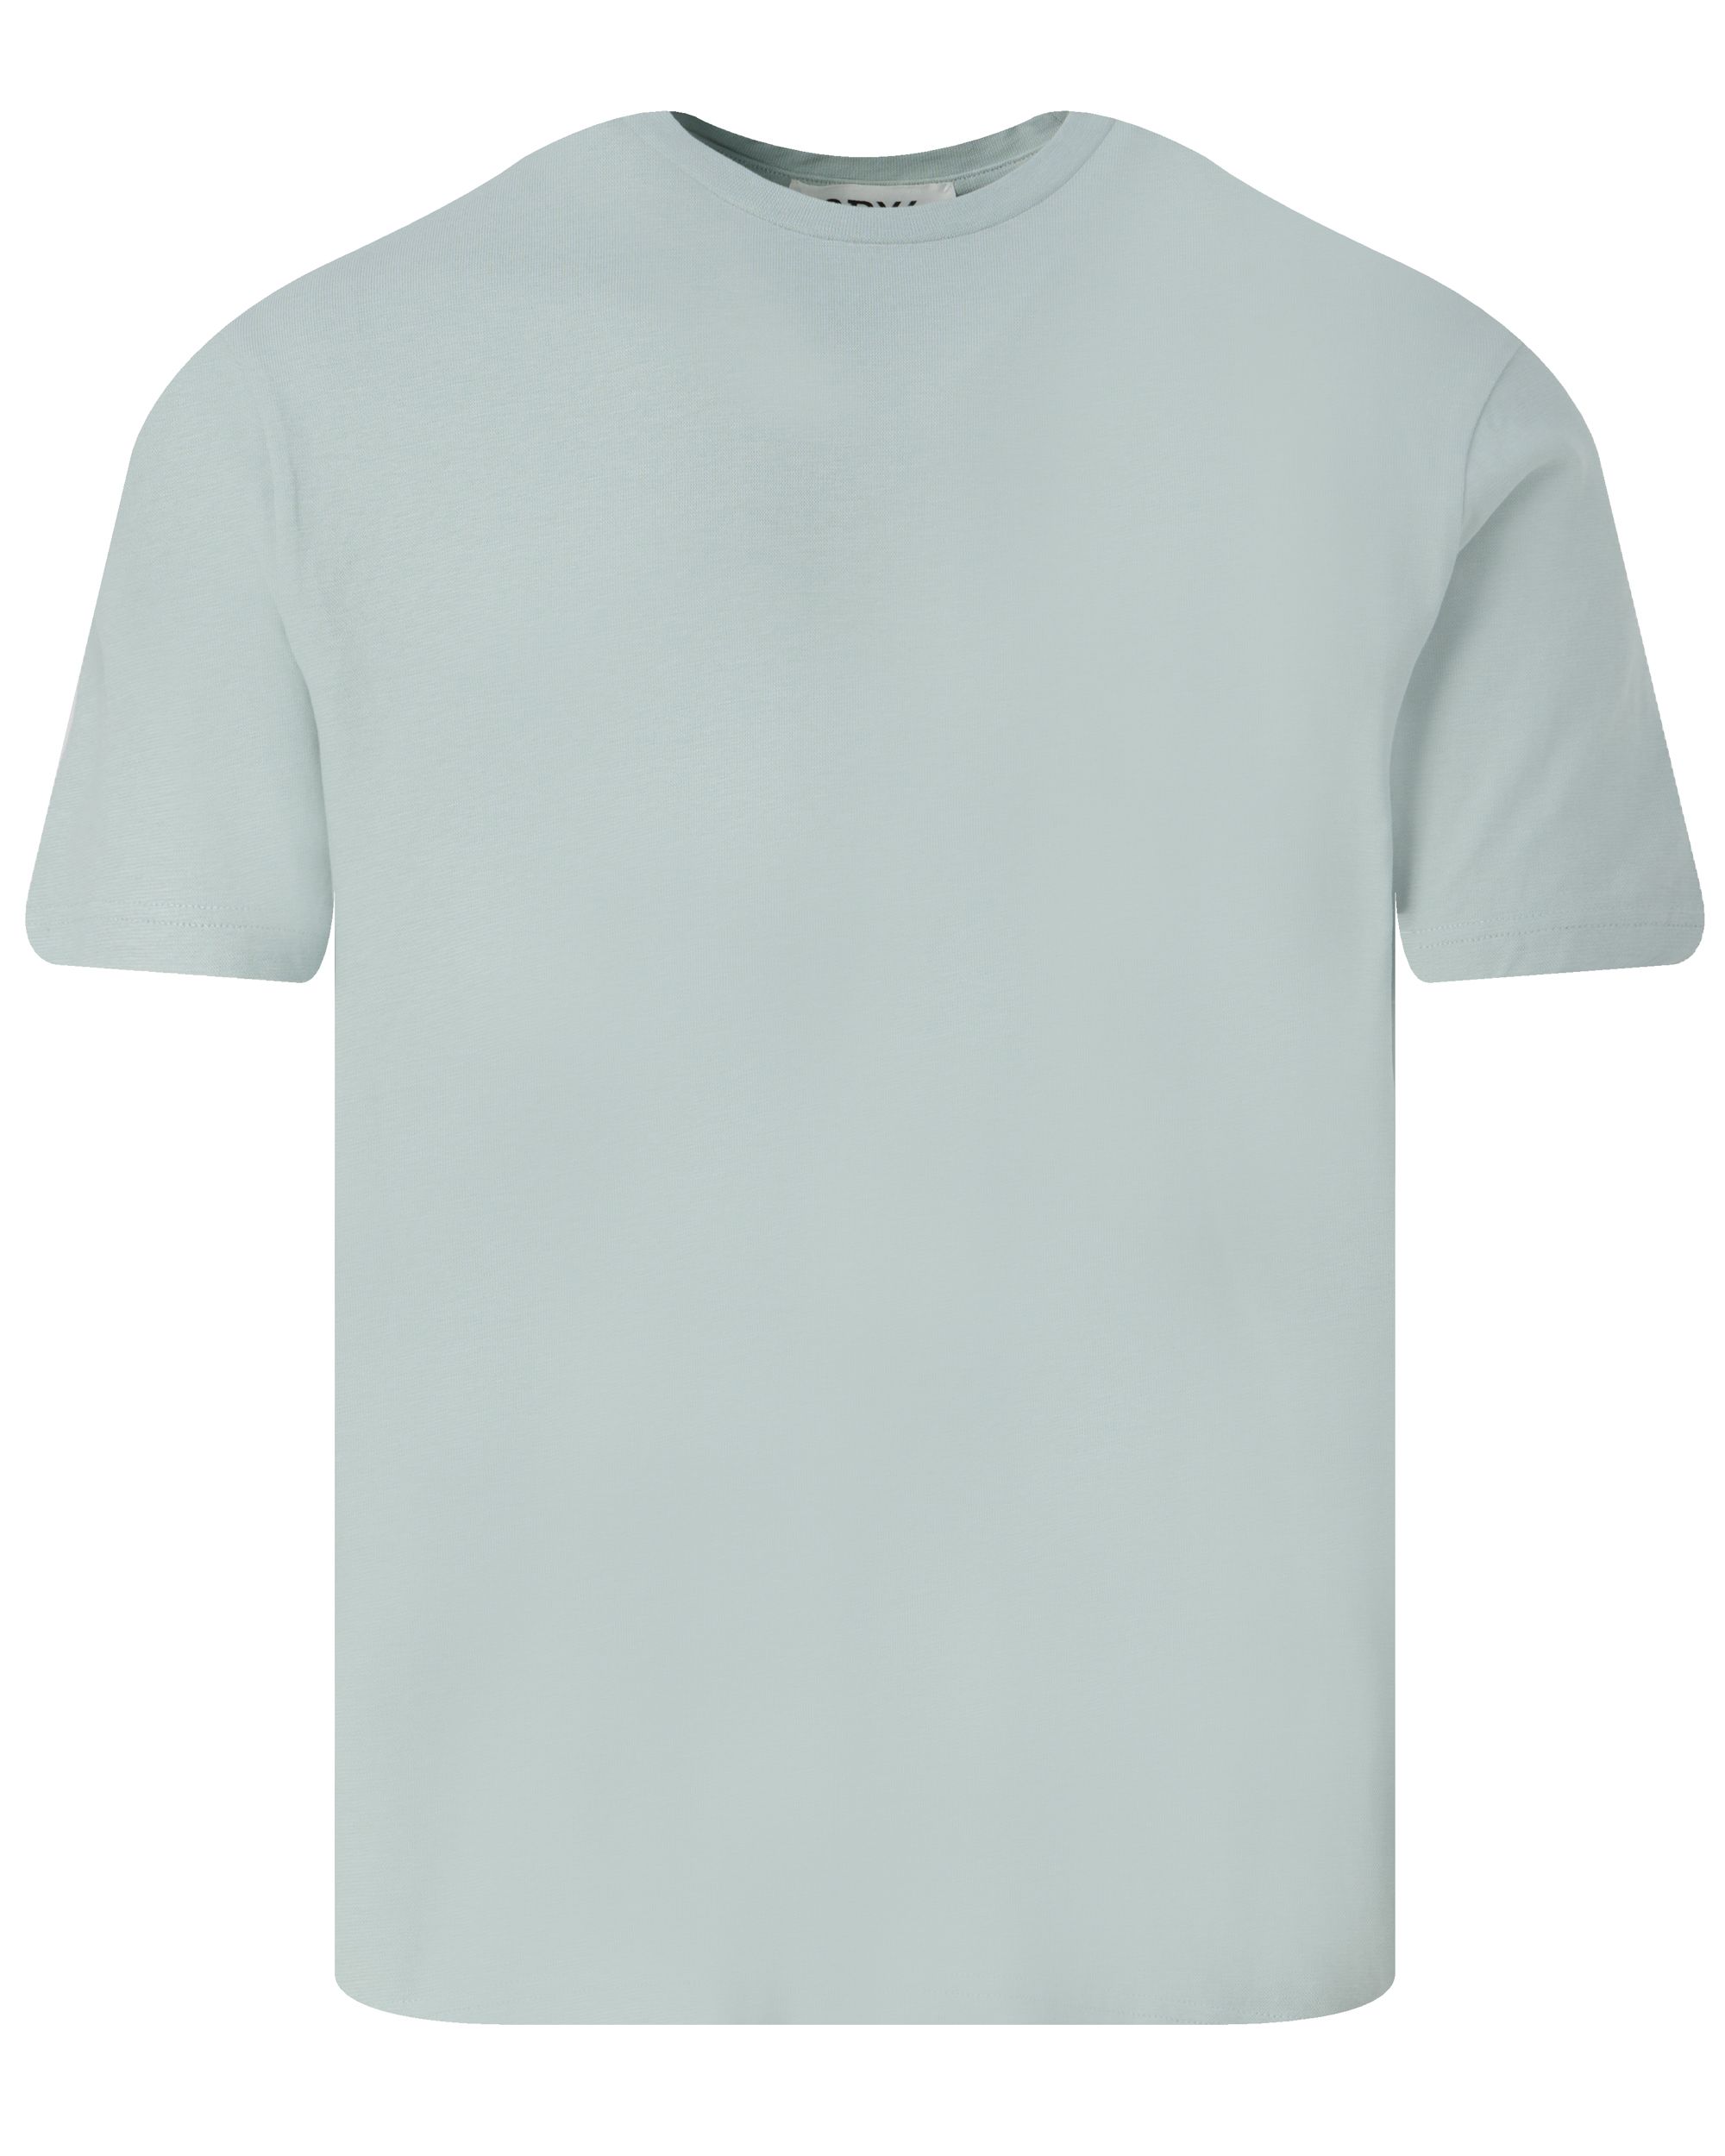 Drykorn Gilberd T-shirt KM Groen 093450-001-L